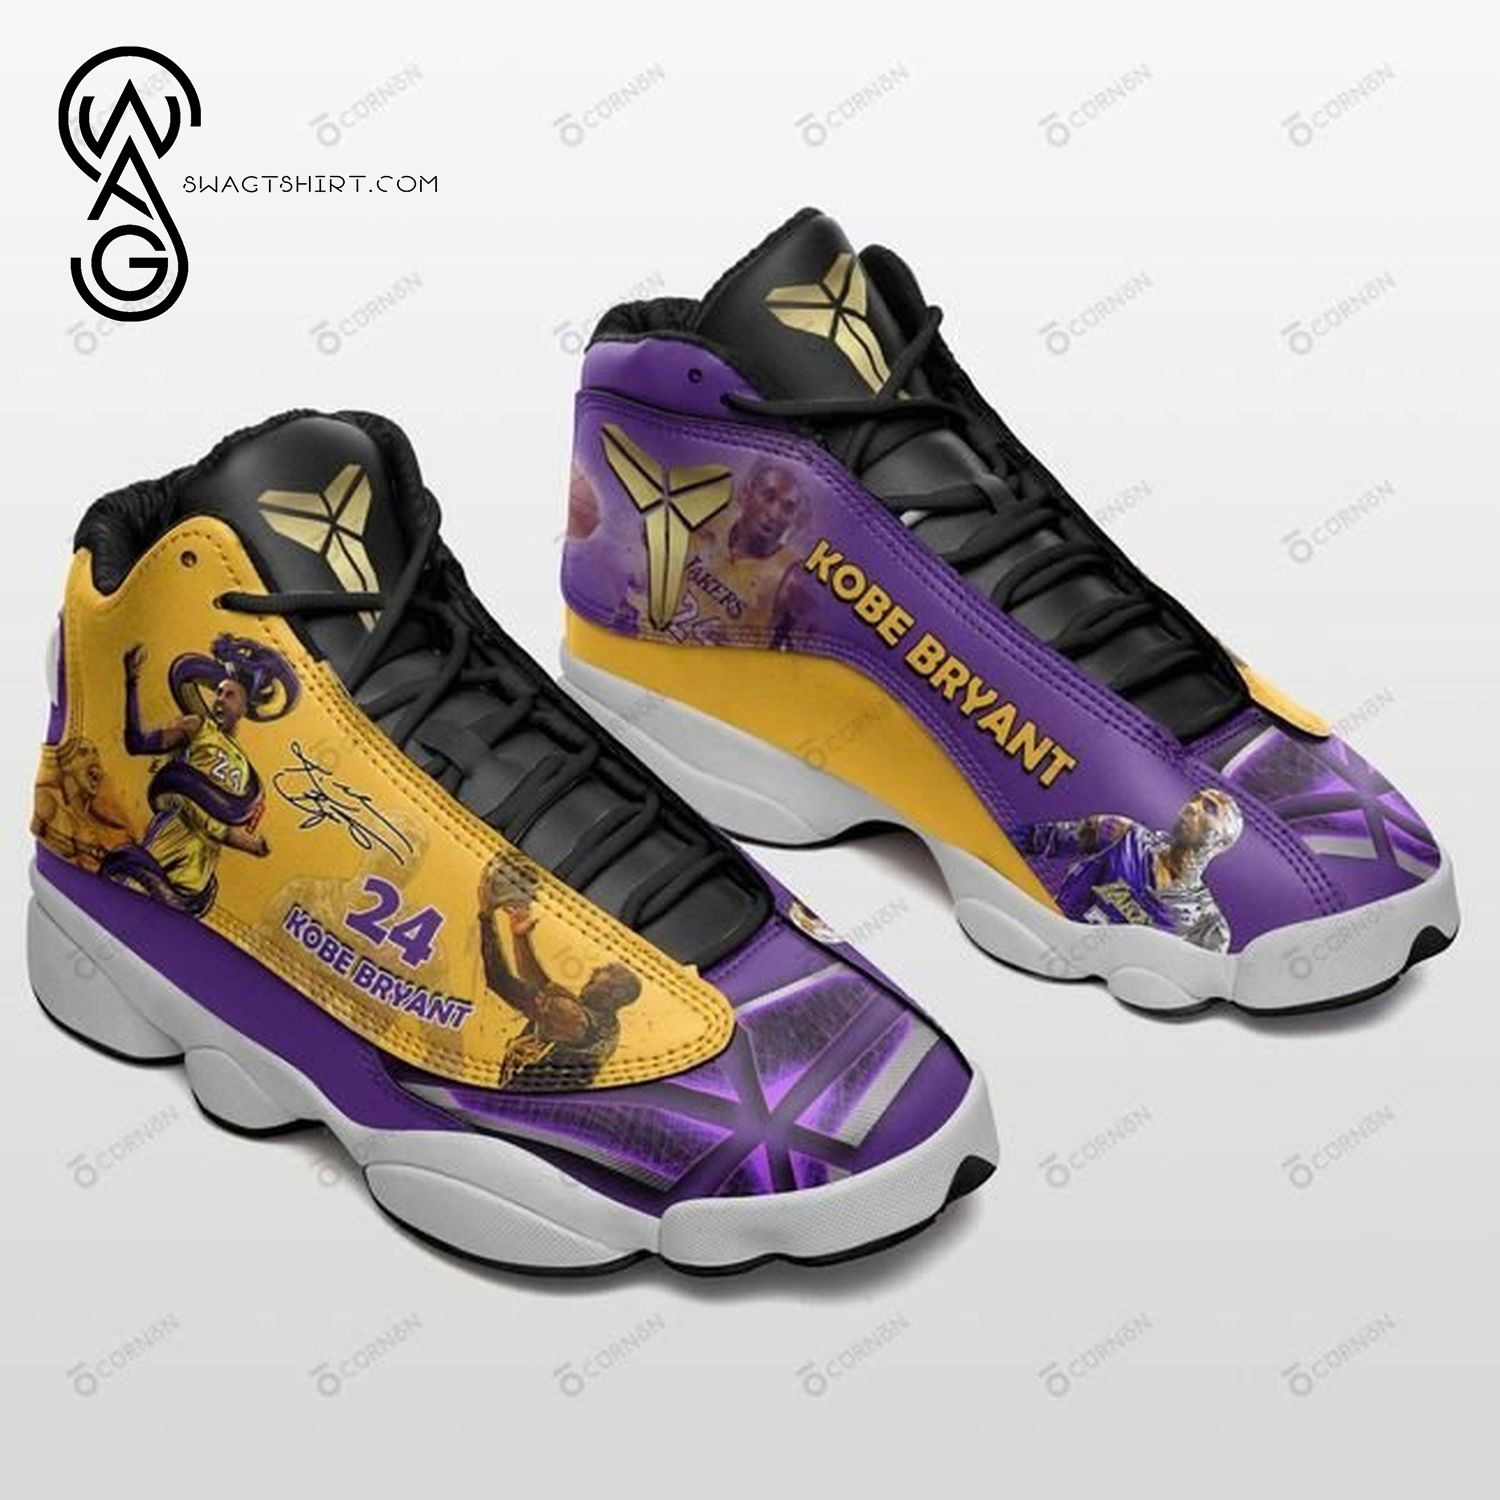 Kobe Bryant Basketball Air Jordan 13 Shoes